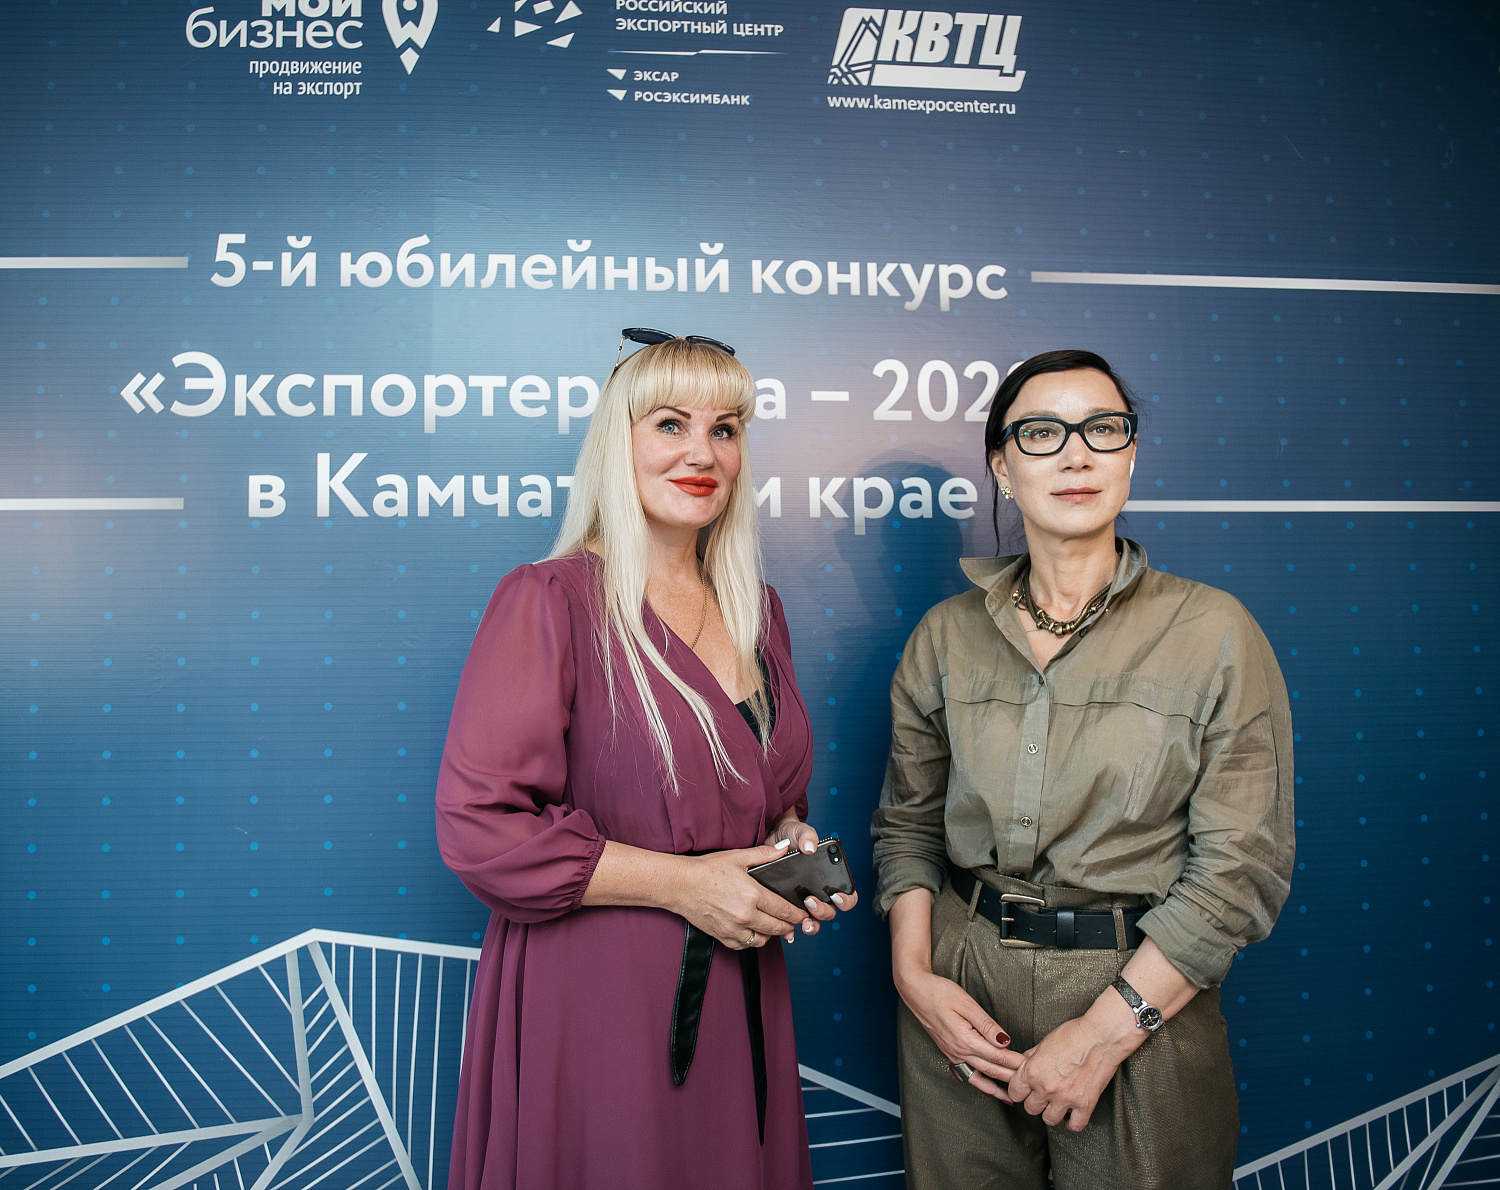 23 июня прошло награждение лауреатов регионального конкурса «Экспортер года – 2022». 